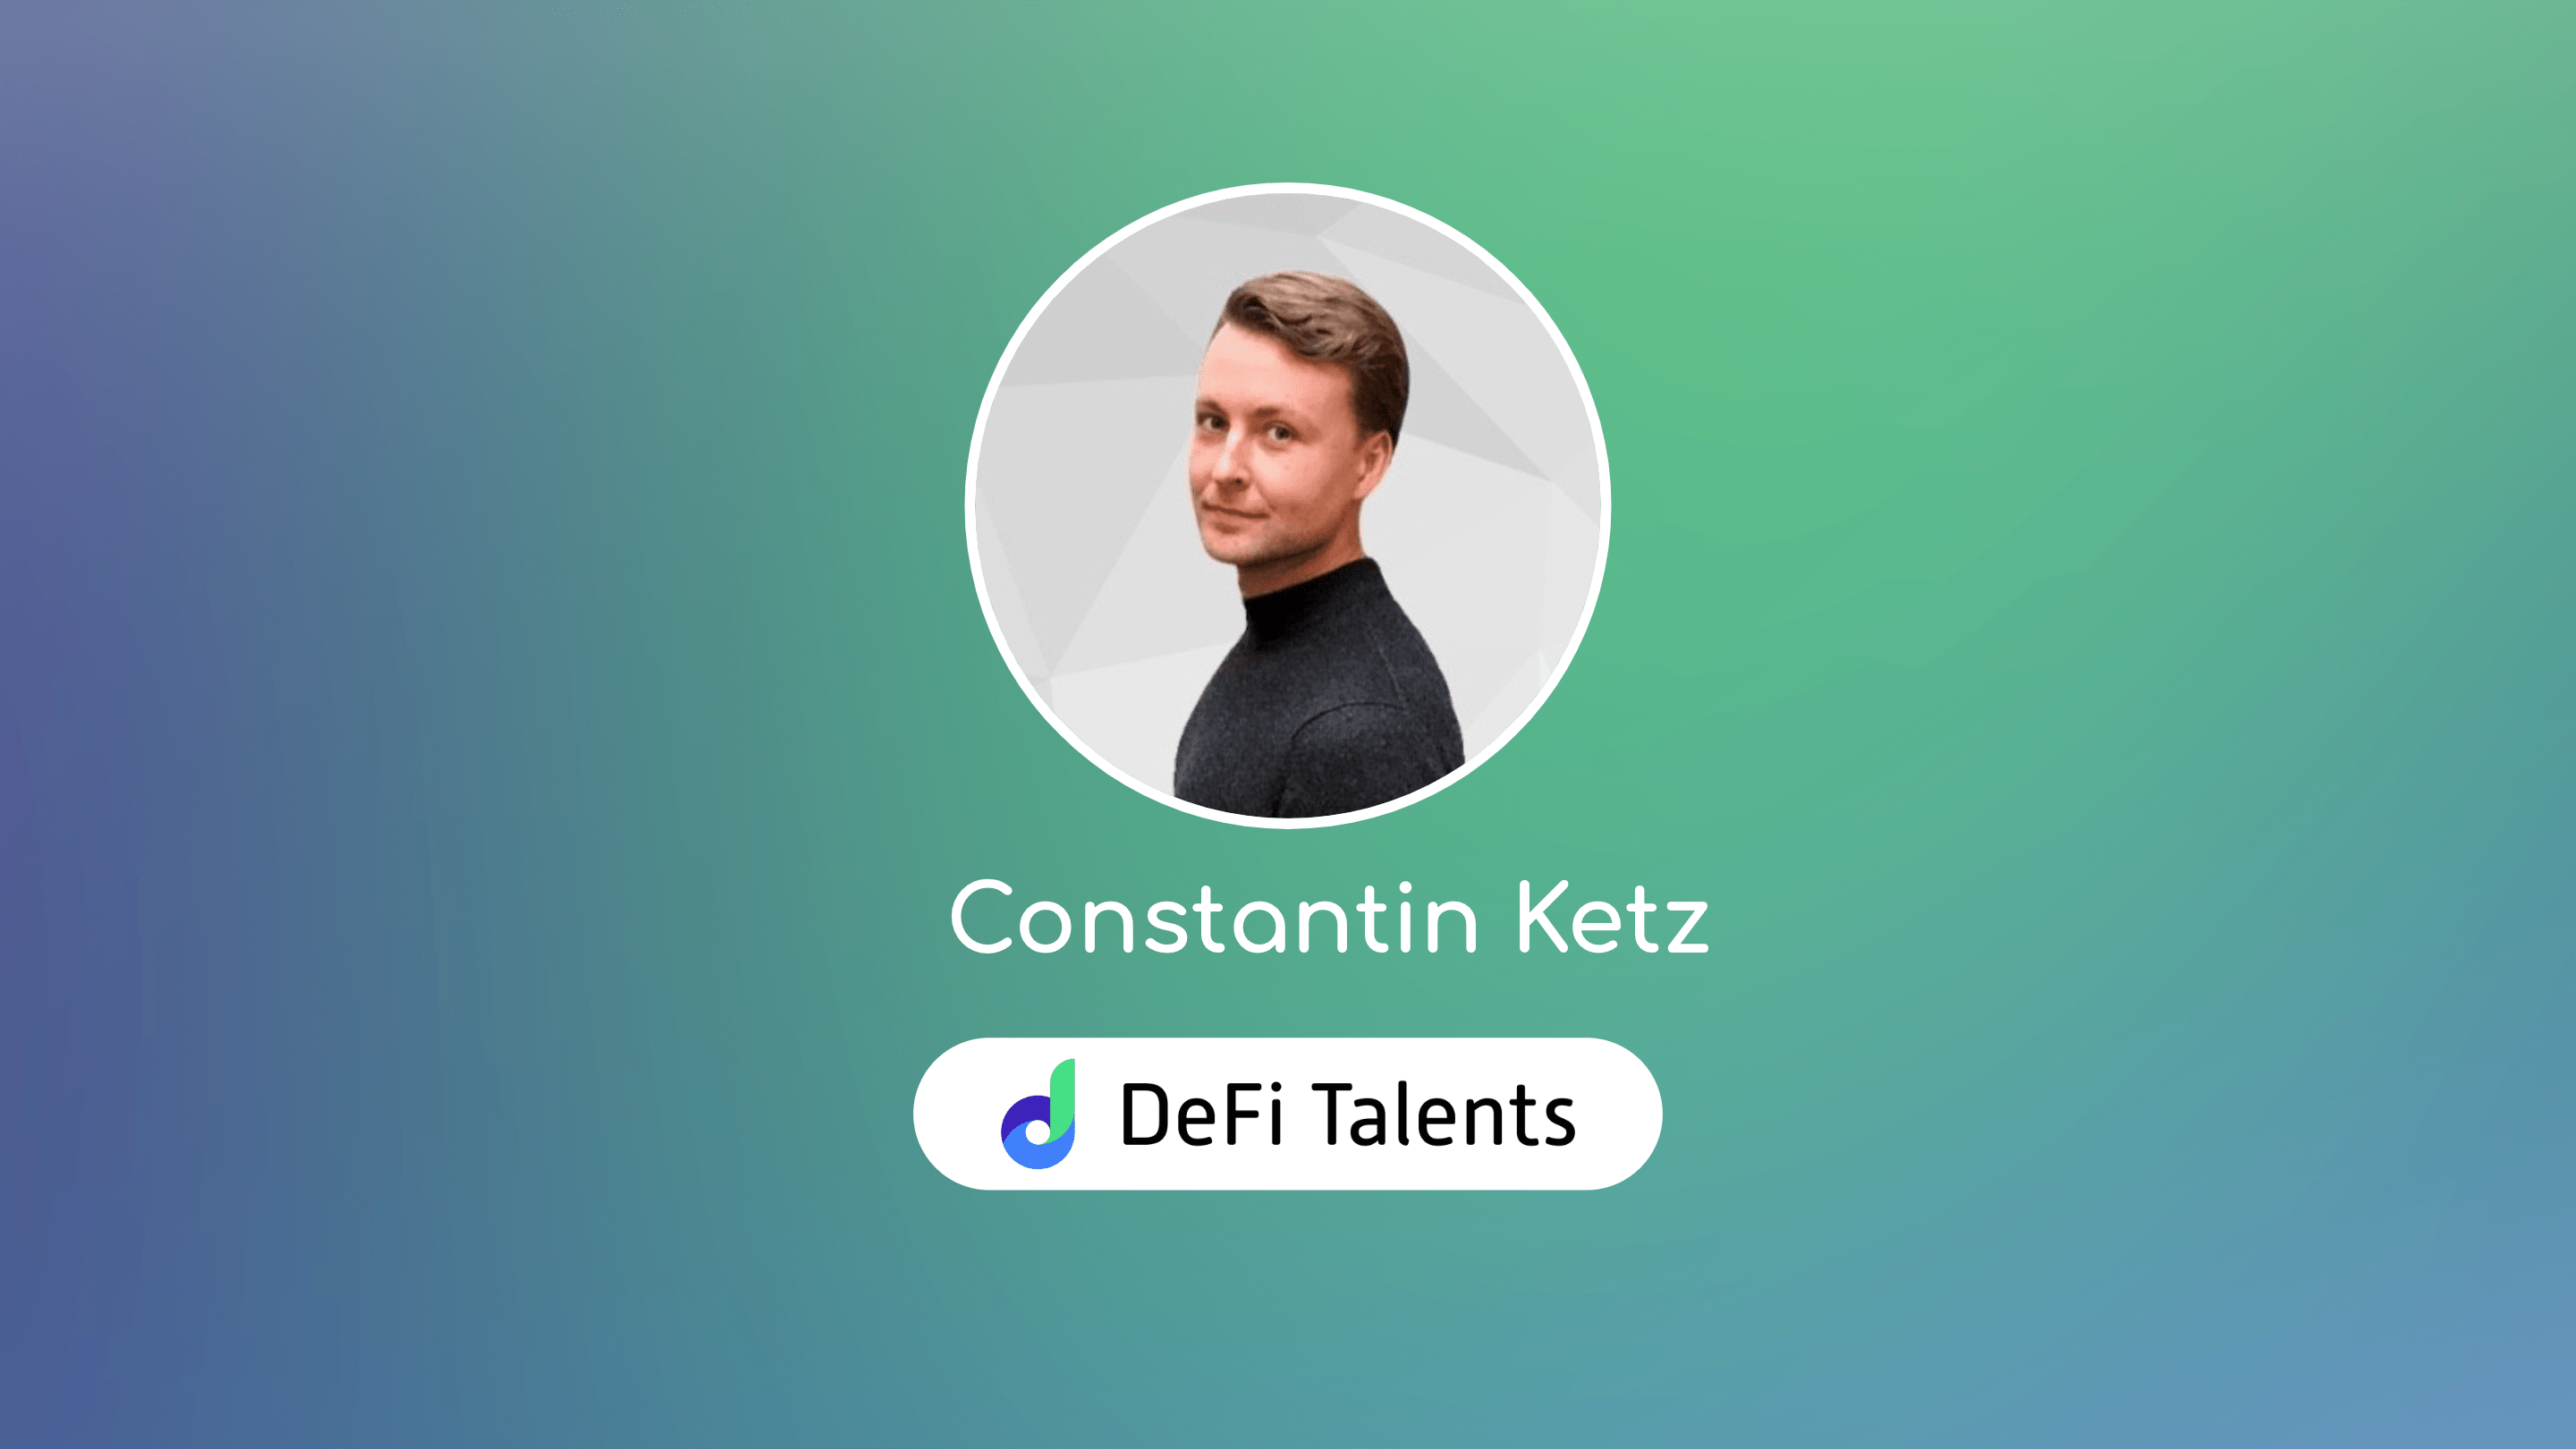 DeFi Talents Mentor – Constantin Ketz